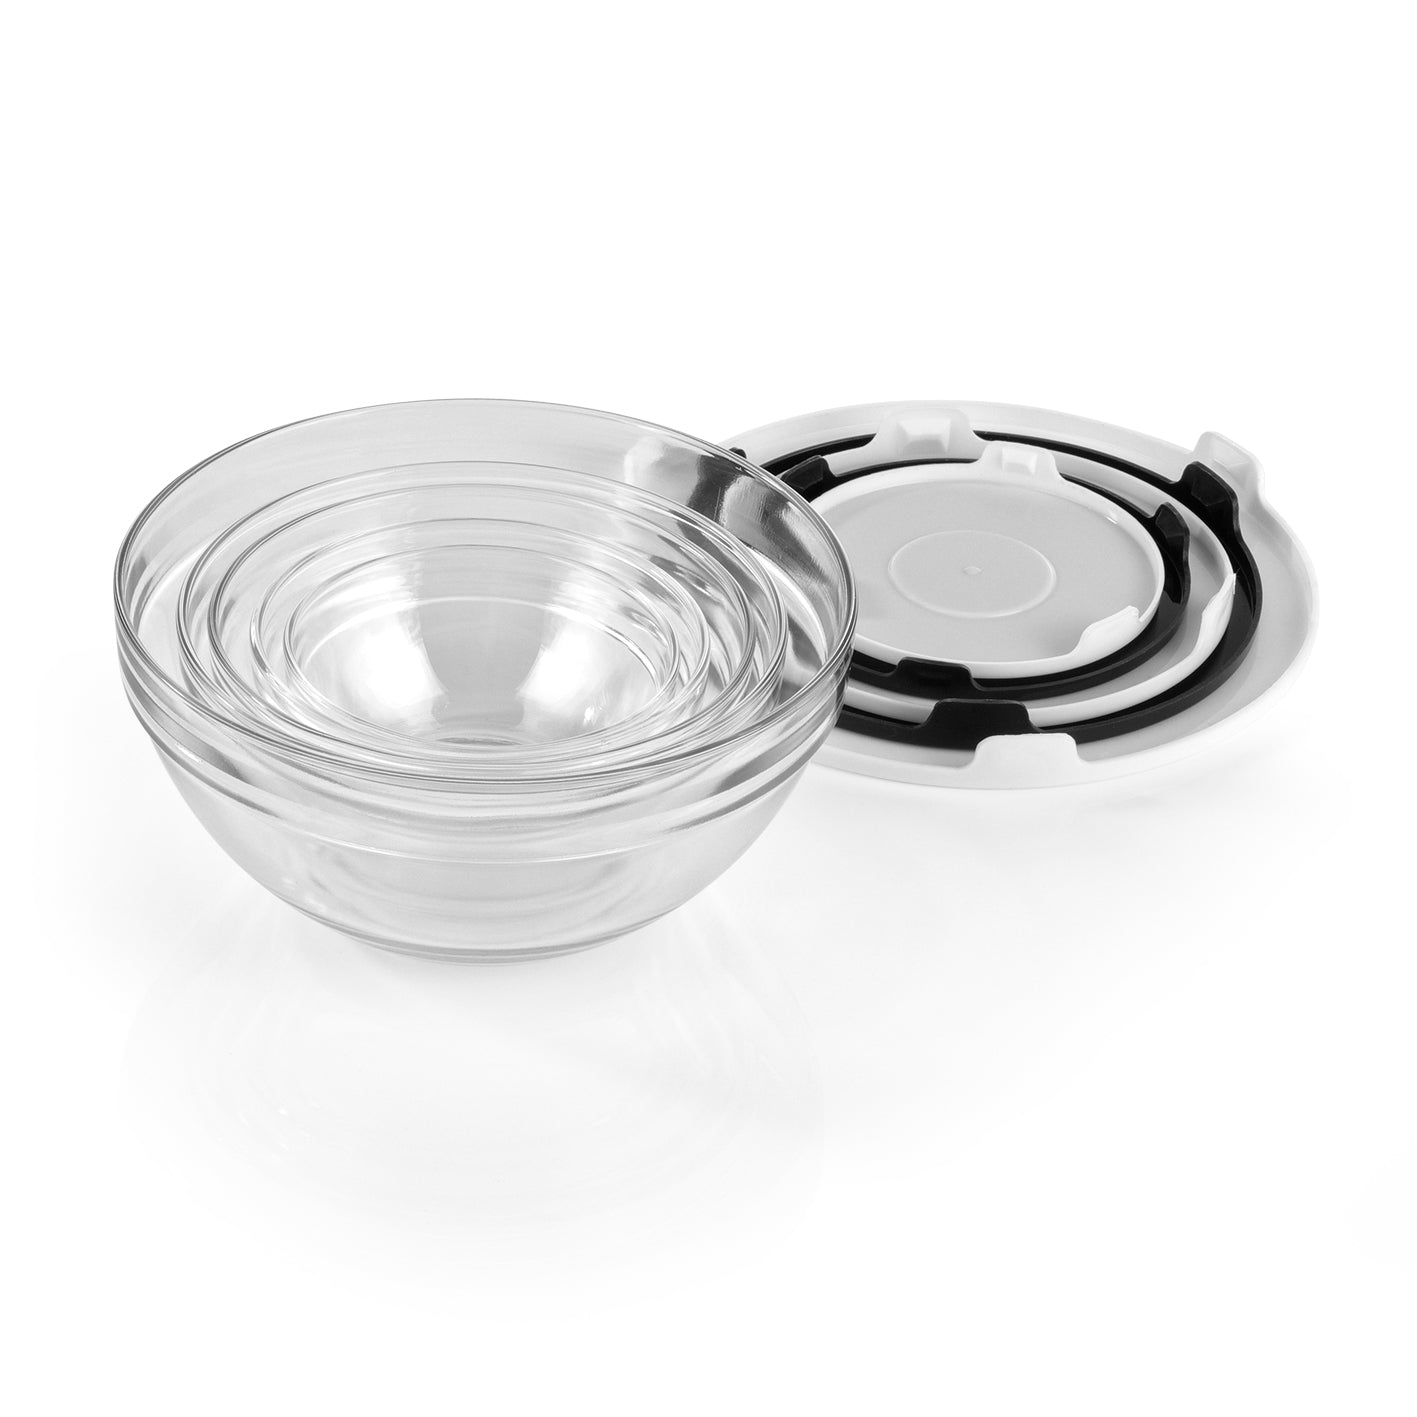 Aufbewahrungs-Schüsseln Glas - Stapelbar - schwarz/weiß